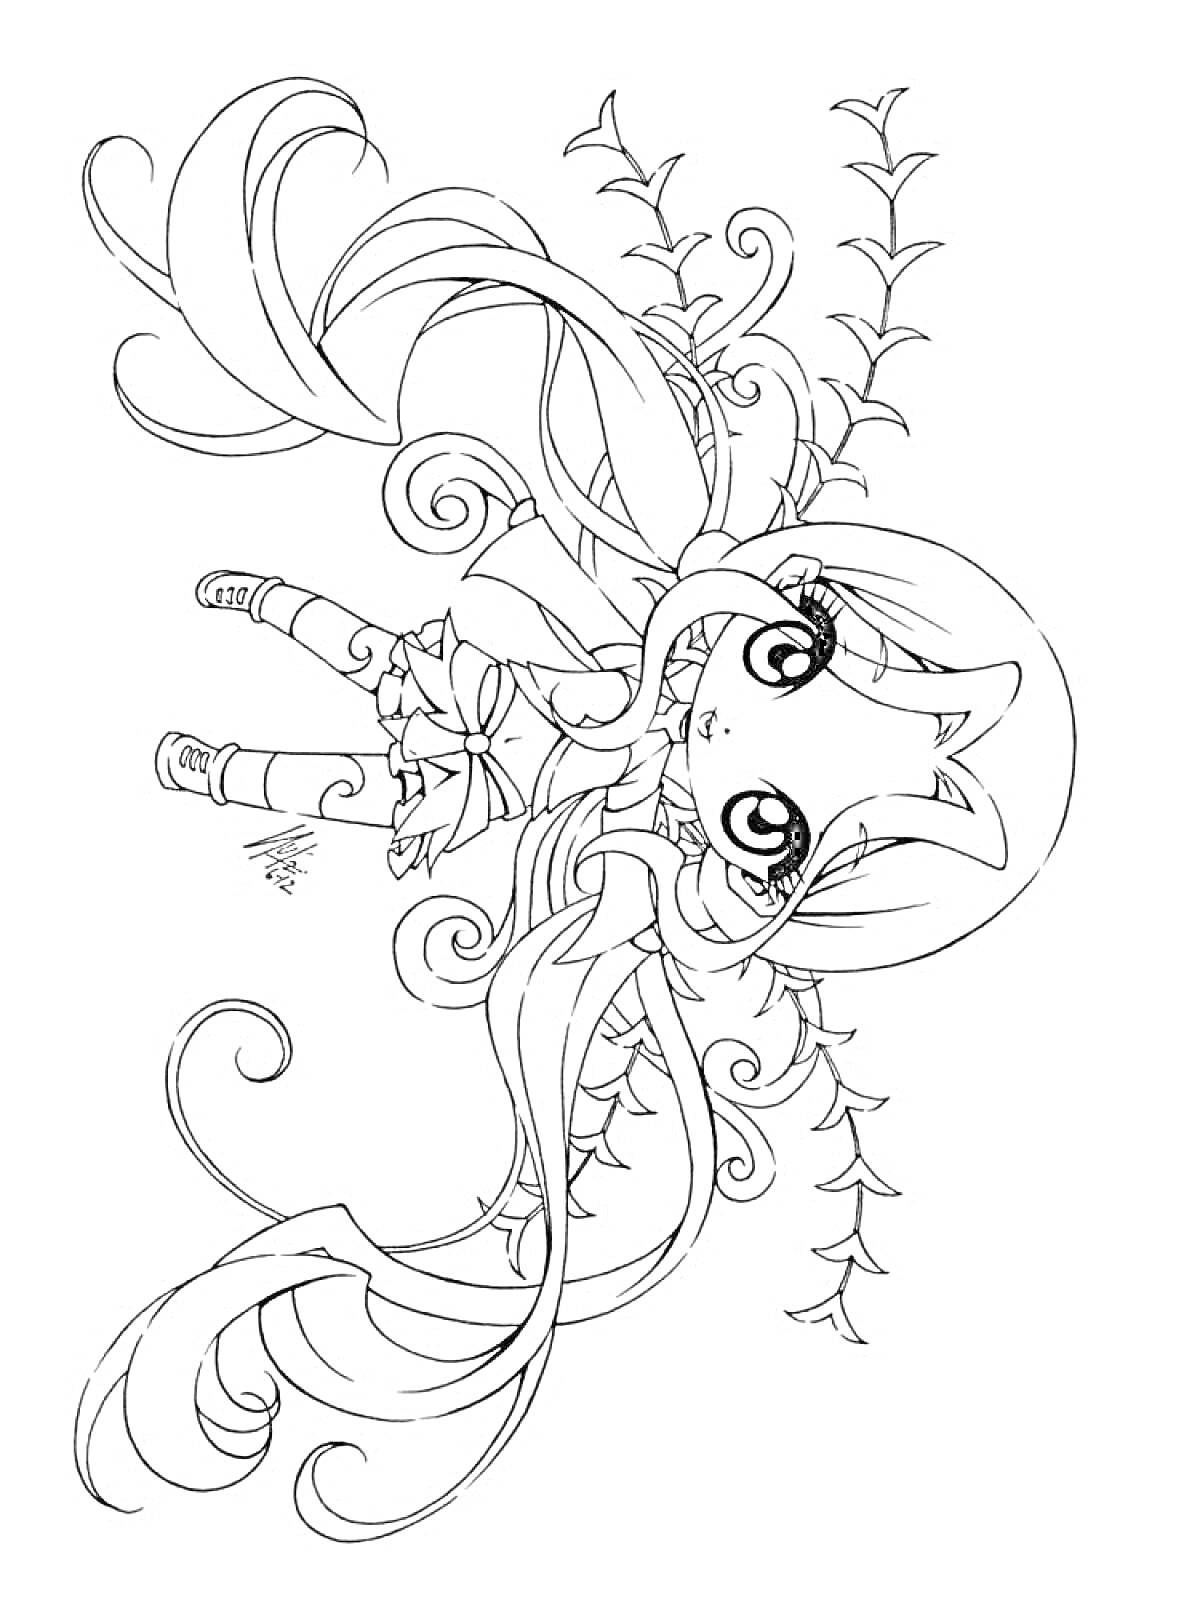 Раскраска Аниме Фея с длинными волосами, в ботинках и платье, с цветочным узором на заднем плане